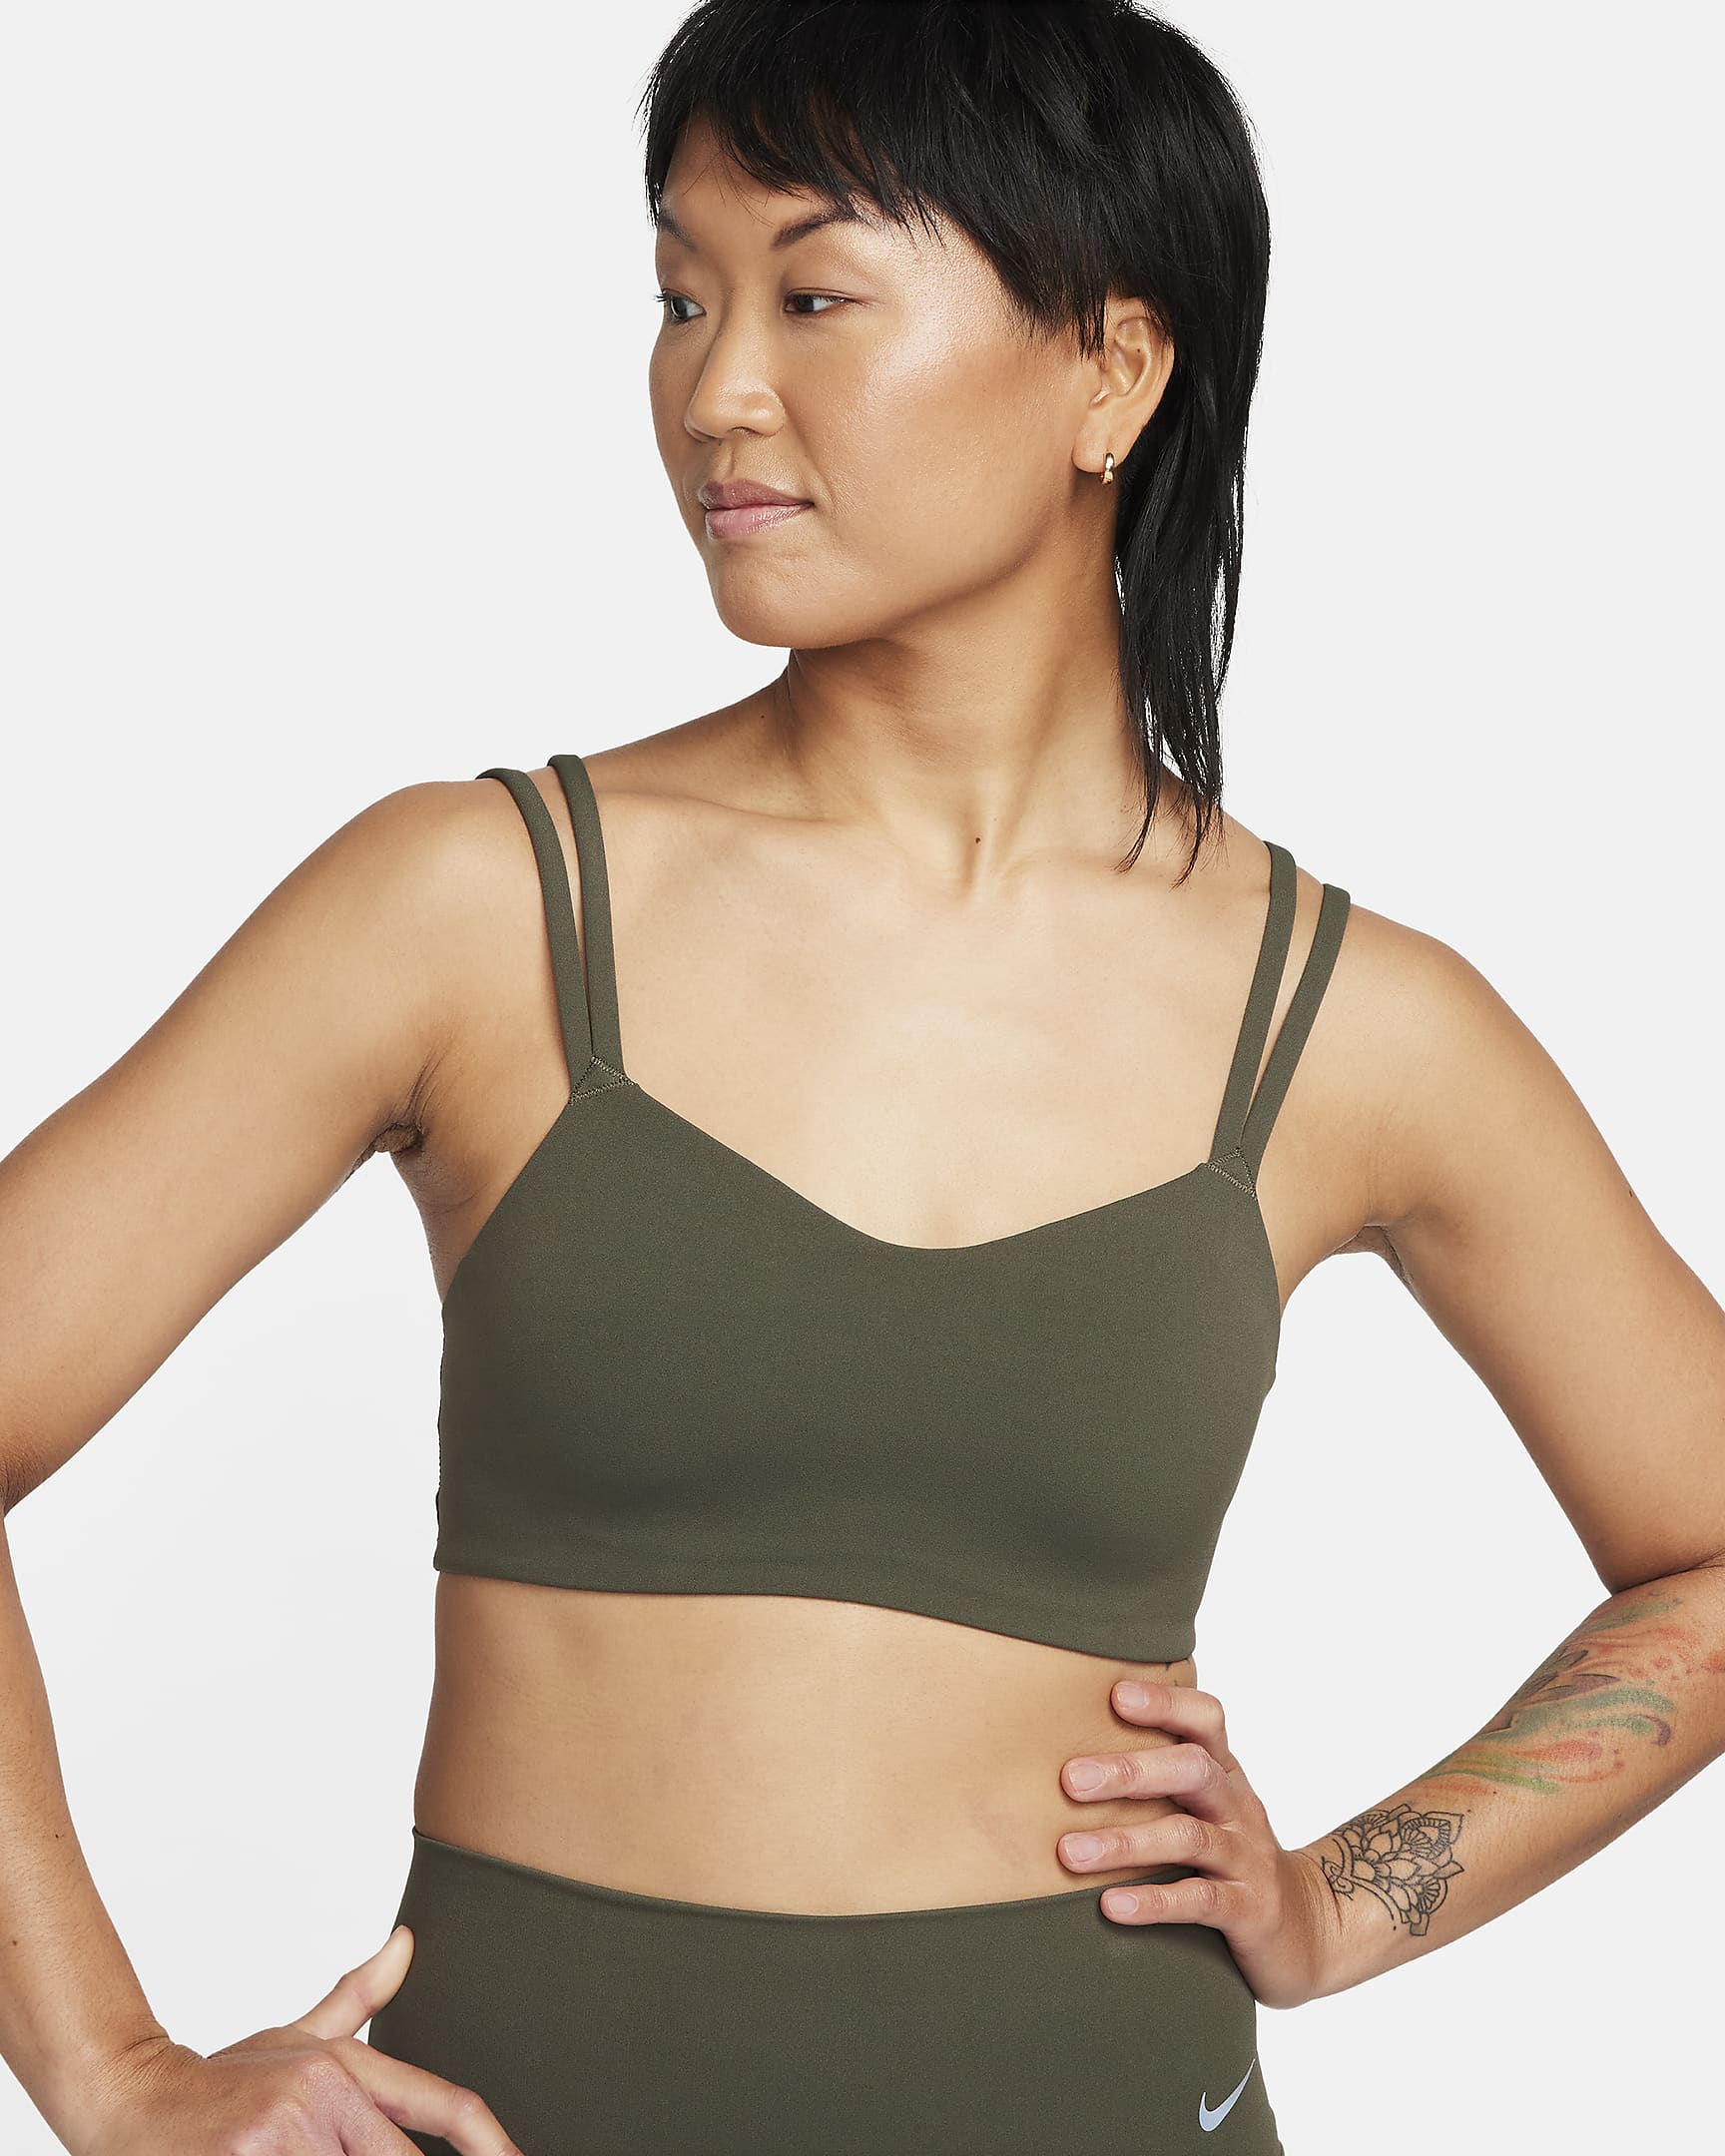 Vadderad sport-BH Nike Zenvy med tunna axelband och lätt stöd för kvinnor - Cargo Khaki/Vit